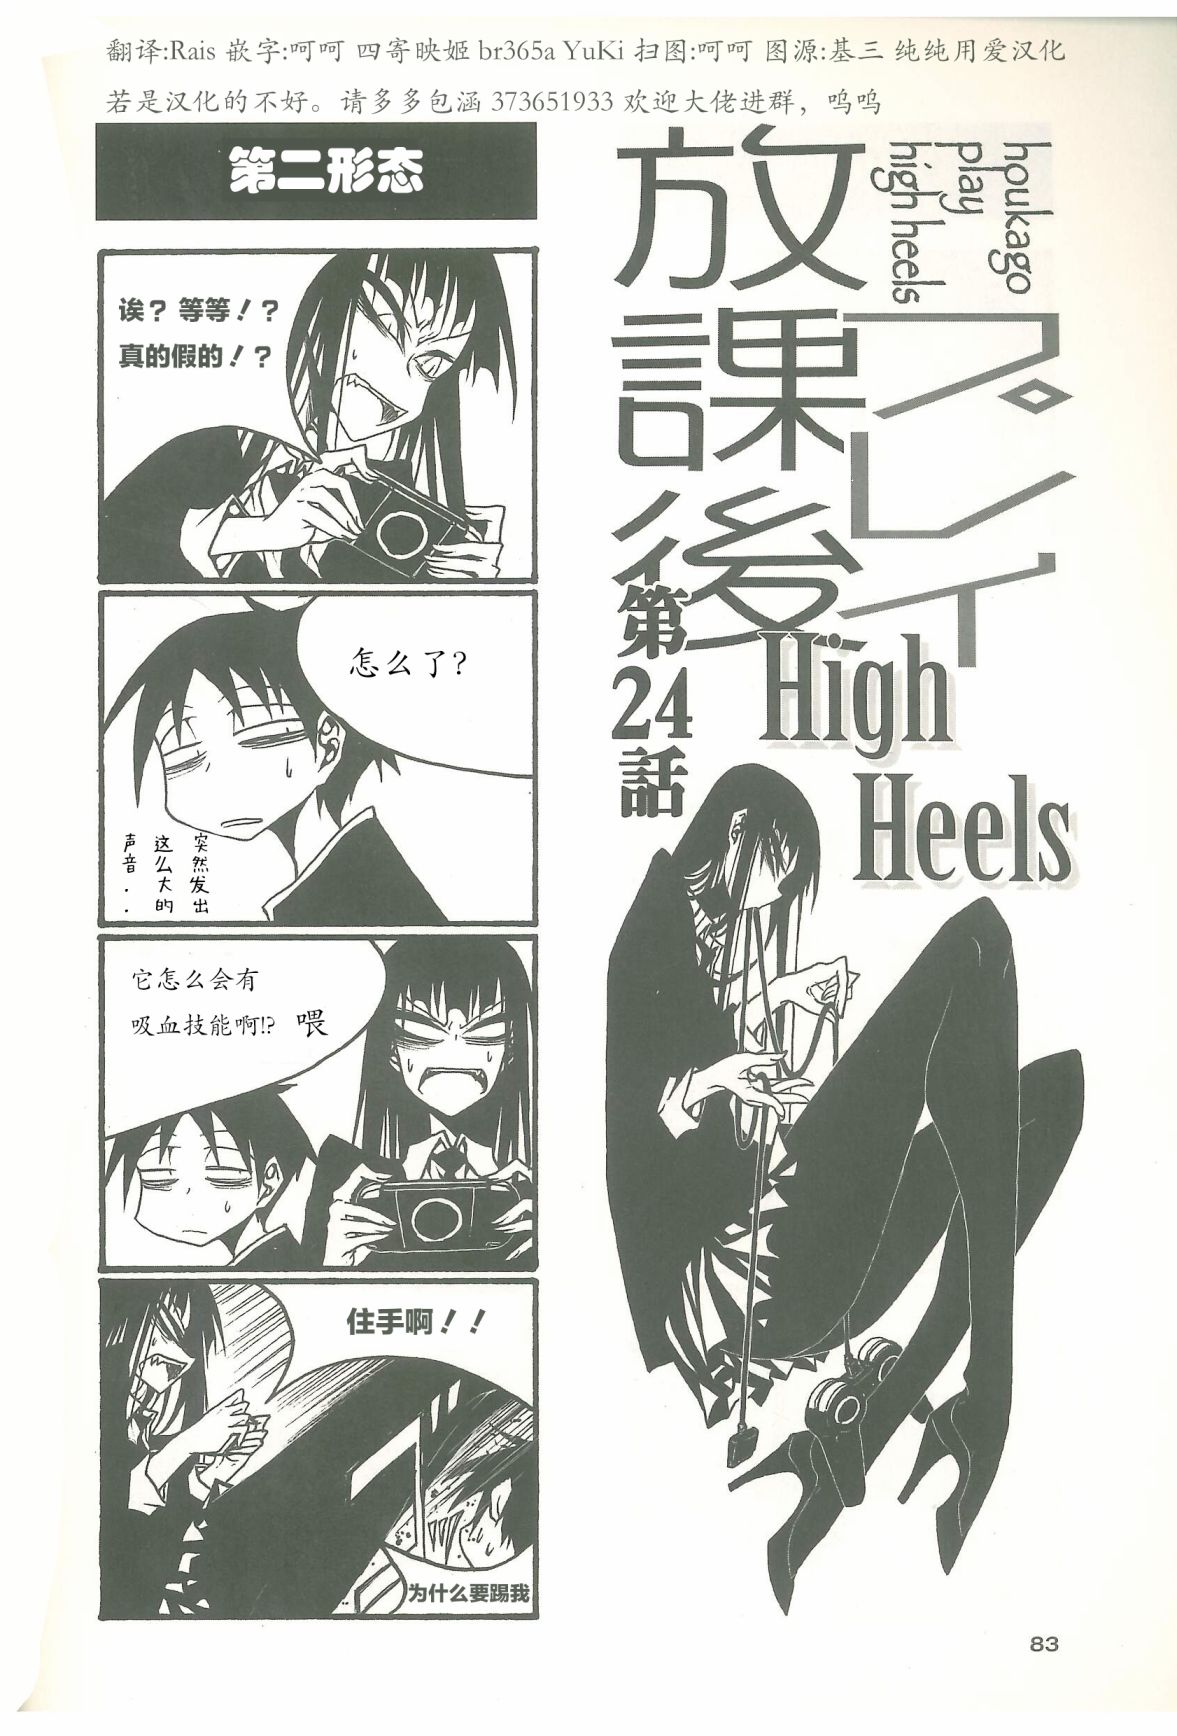 放課後play - 放課後play high heels2 11卷 - 1